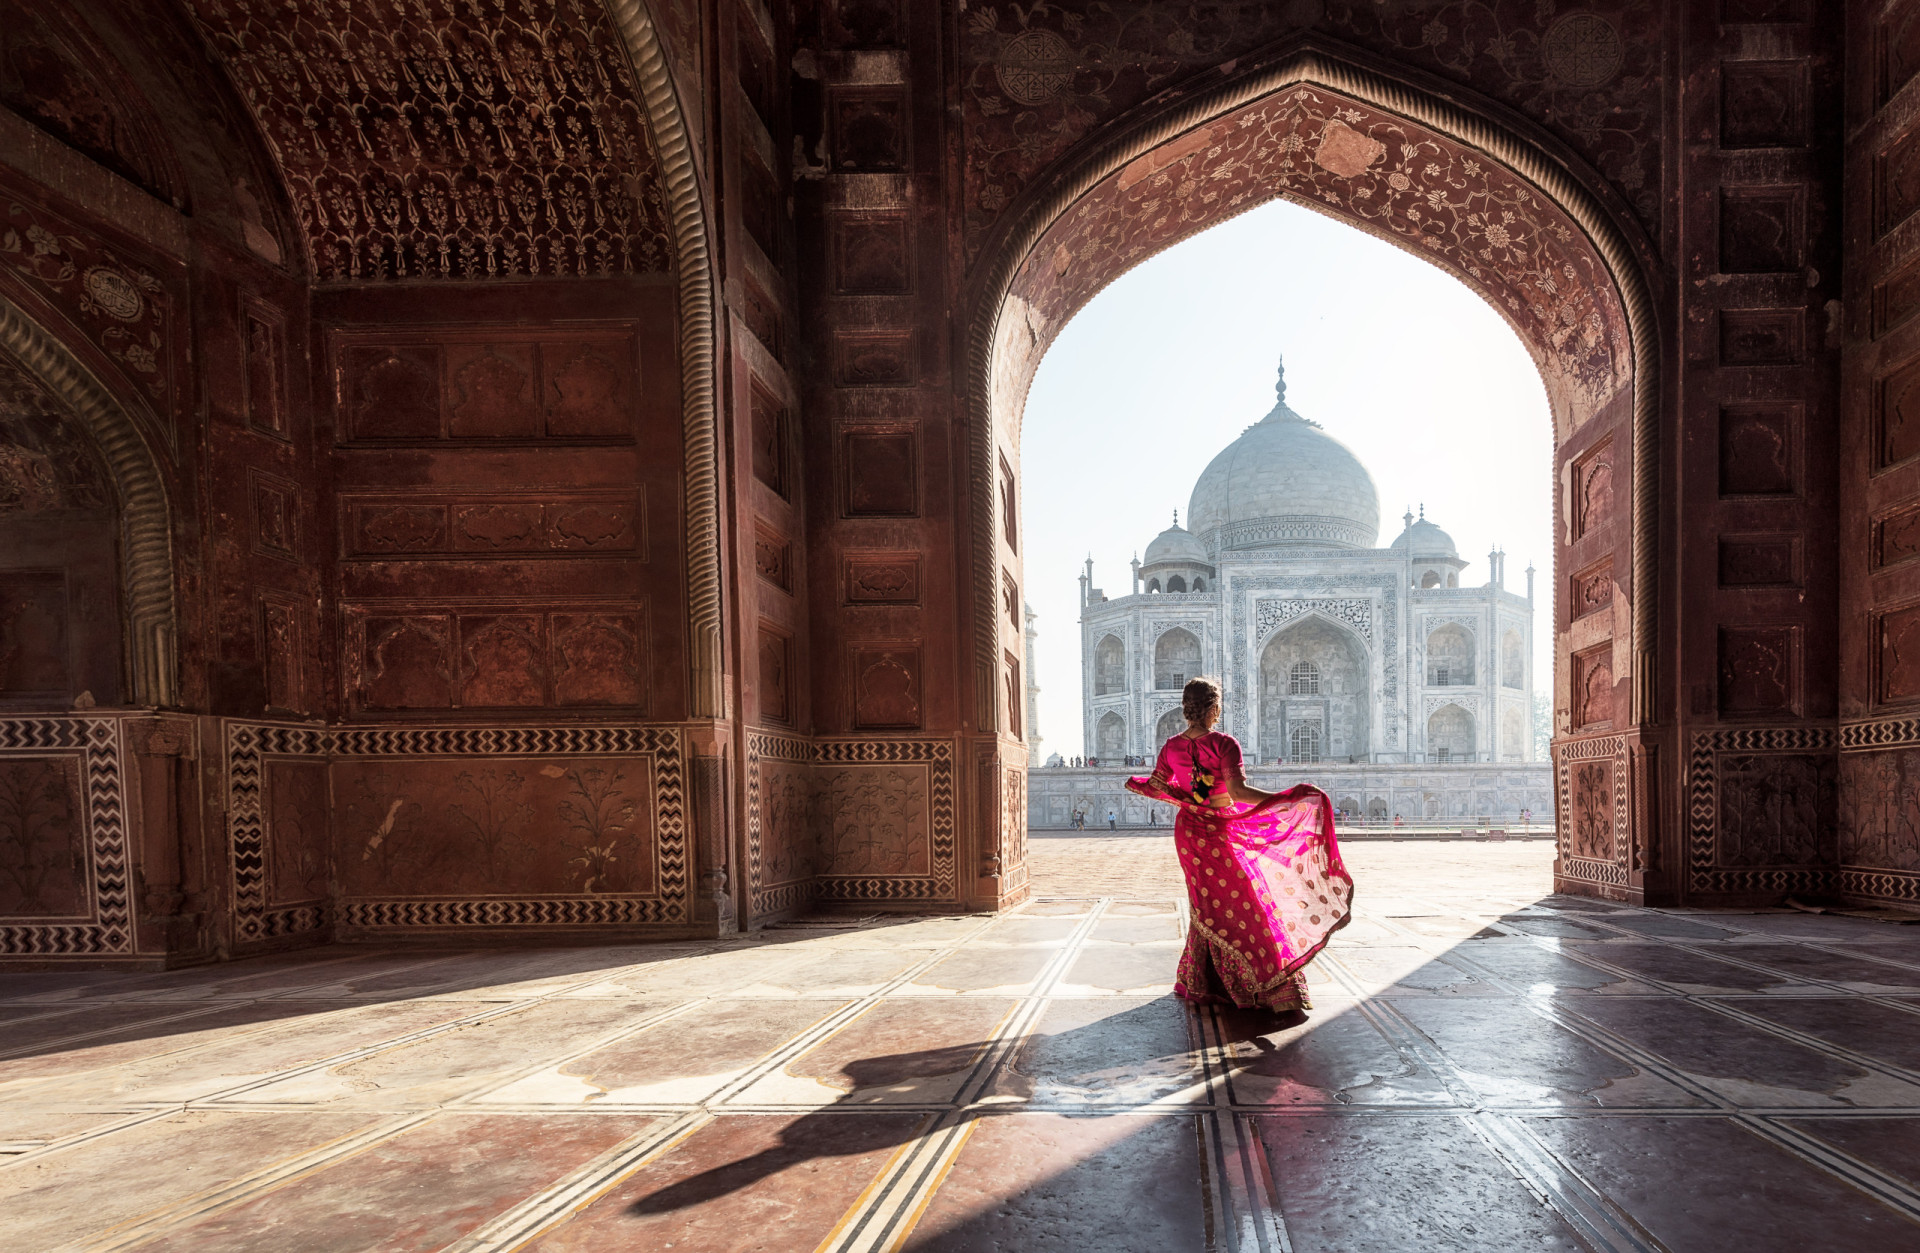 <p>L'un des pays les plus diversifiés au monde sur le plan ethnique et religieux, est connu pour ses trésors architecturaux historiques, dont le Taj Mahal. Mais l'Inde moderne a également apporté sa part de contribution culturelle. Il suffit de regarder Bollywood, qui produit plus de longs métrages que n'importe quelle autre industrie cinématographique dans le monde.</p><p><a href="https://www.msn.com/fr-fr/community/channel/vid-7xx8mnucu55yw63we9va2gwr7uihbxwc68fxqp25x6tg4ftibpra?cvid=94631541bc0f4f89bfd59158d696ad7e">Suivez-nous et accédez tous les jours à du contenu exclusif</a></p>